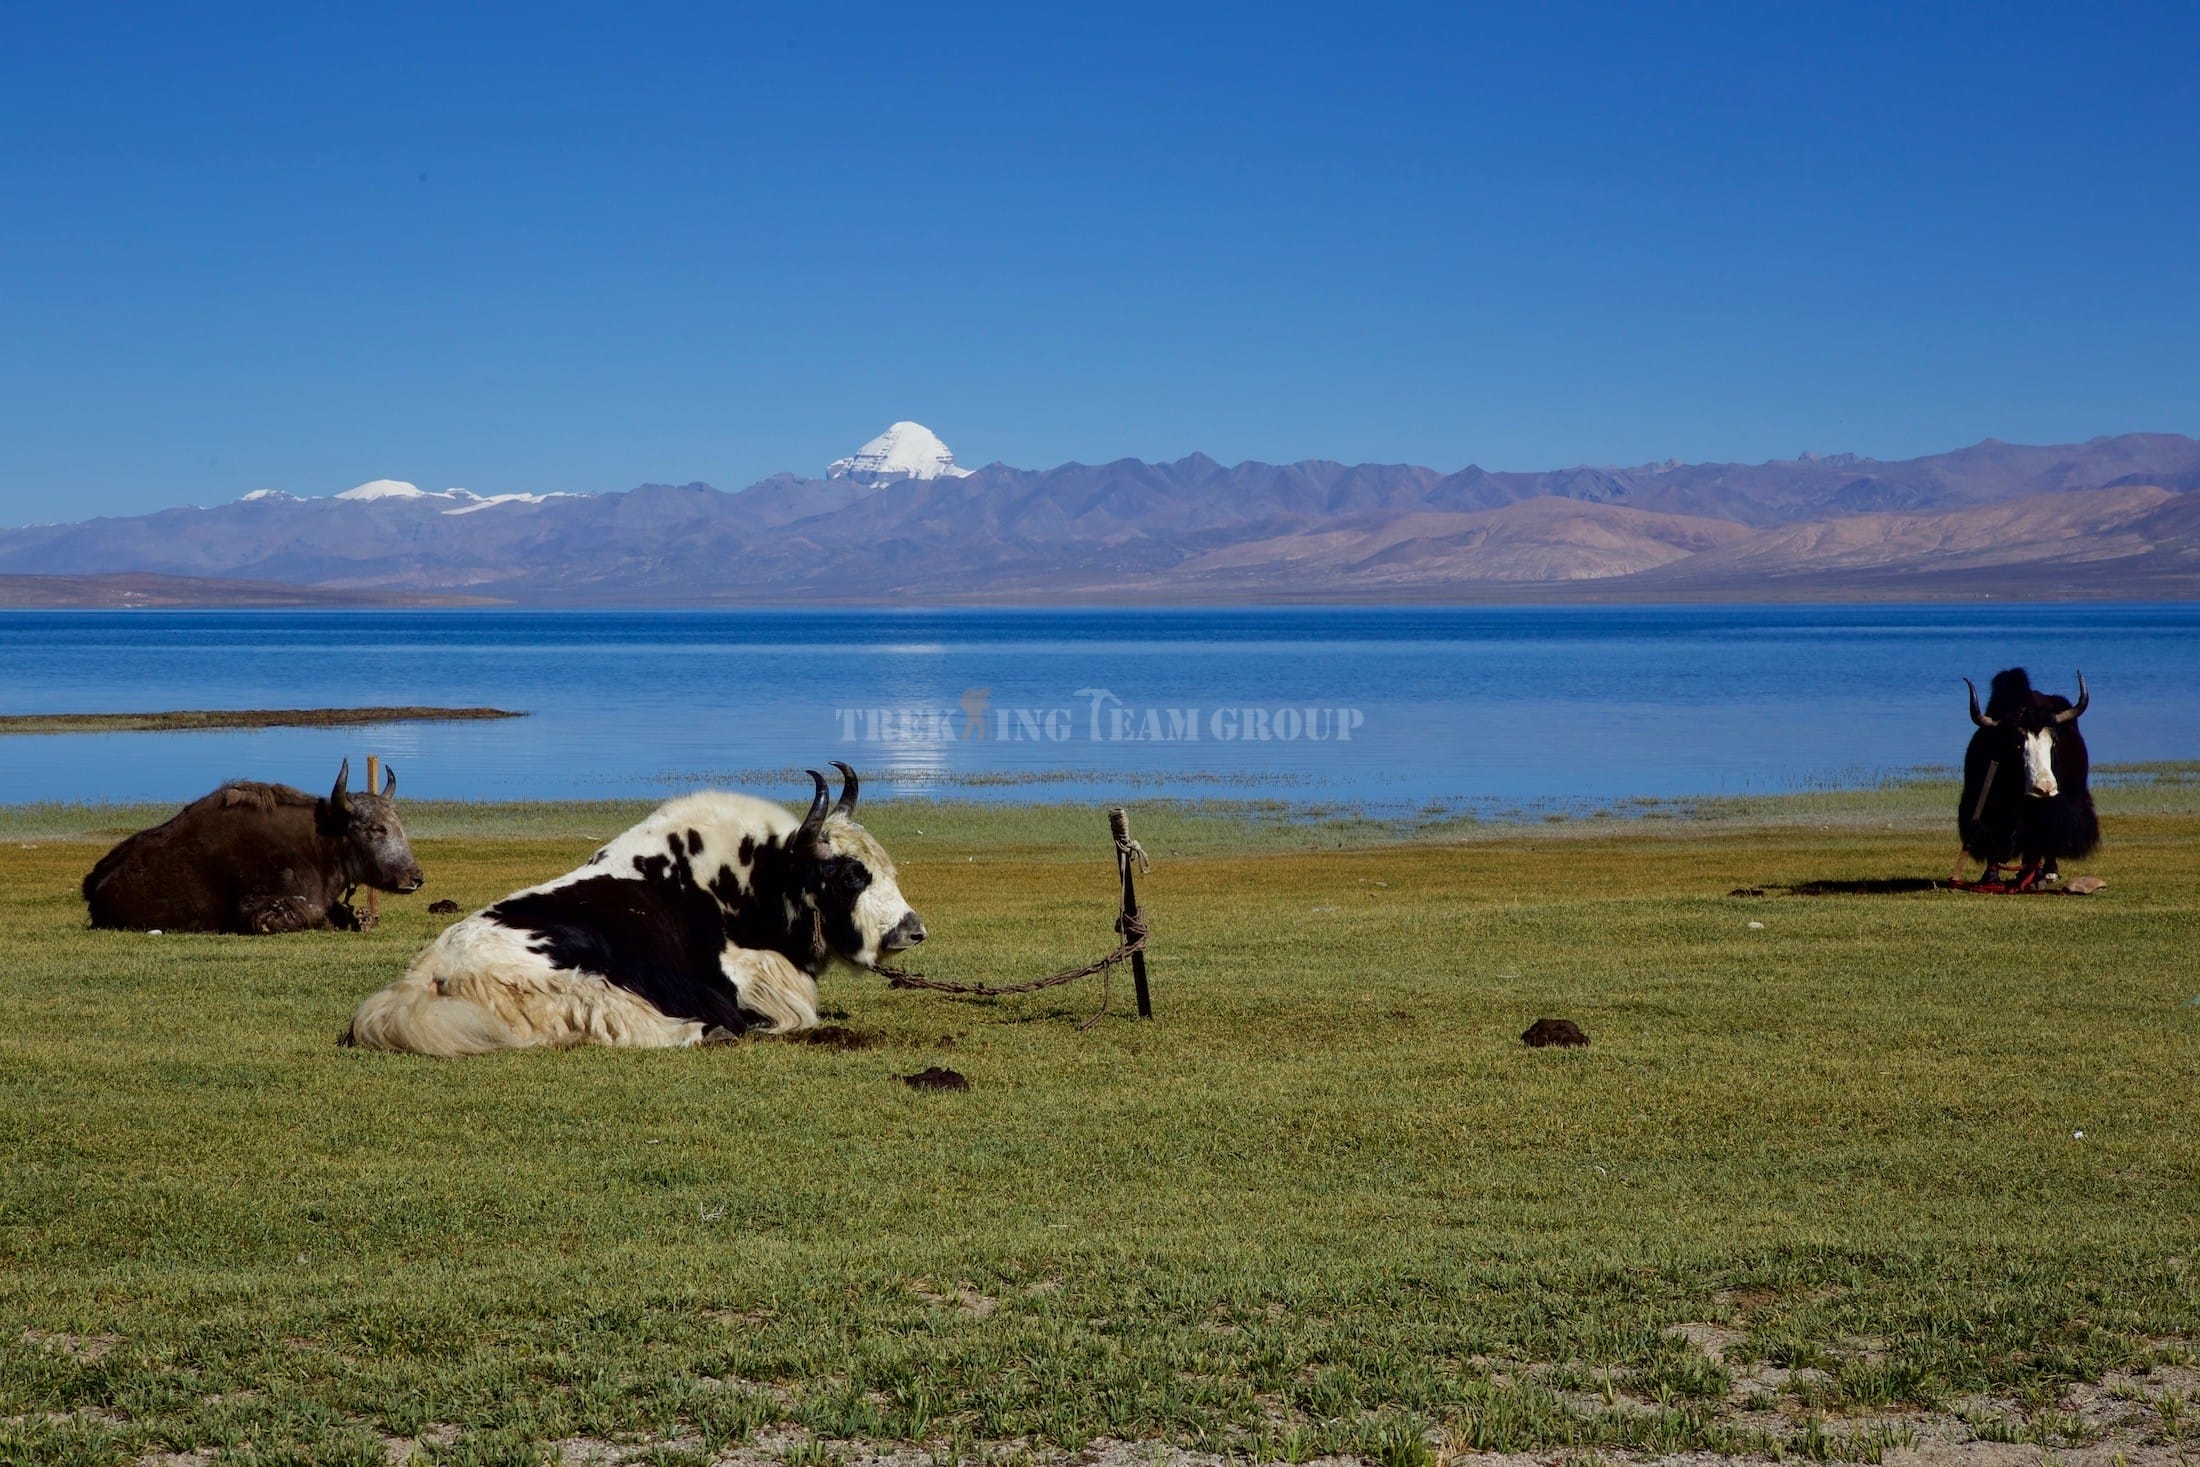 Kailash Mansarovar via Lhasa